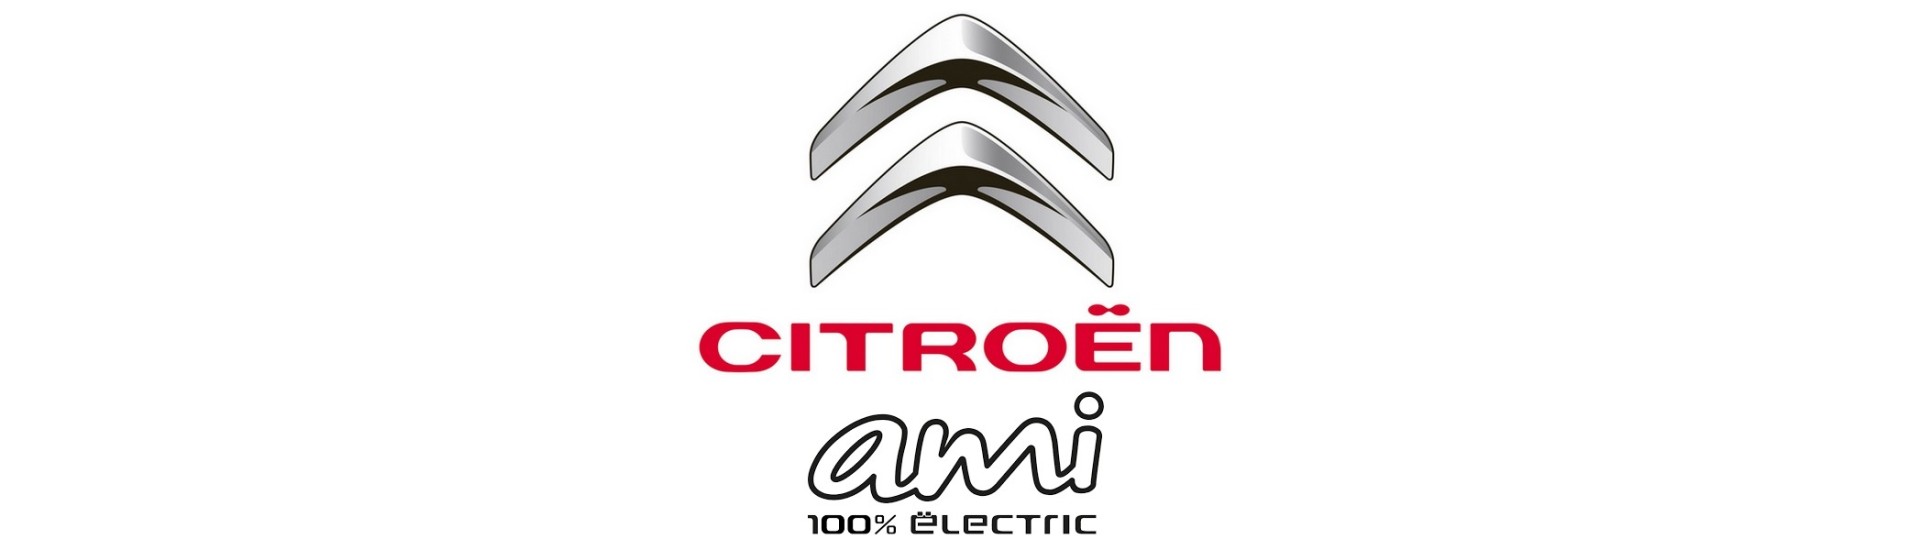 Cavo freno a mano al miglior prezzo senza permesso Citroën